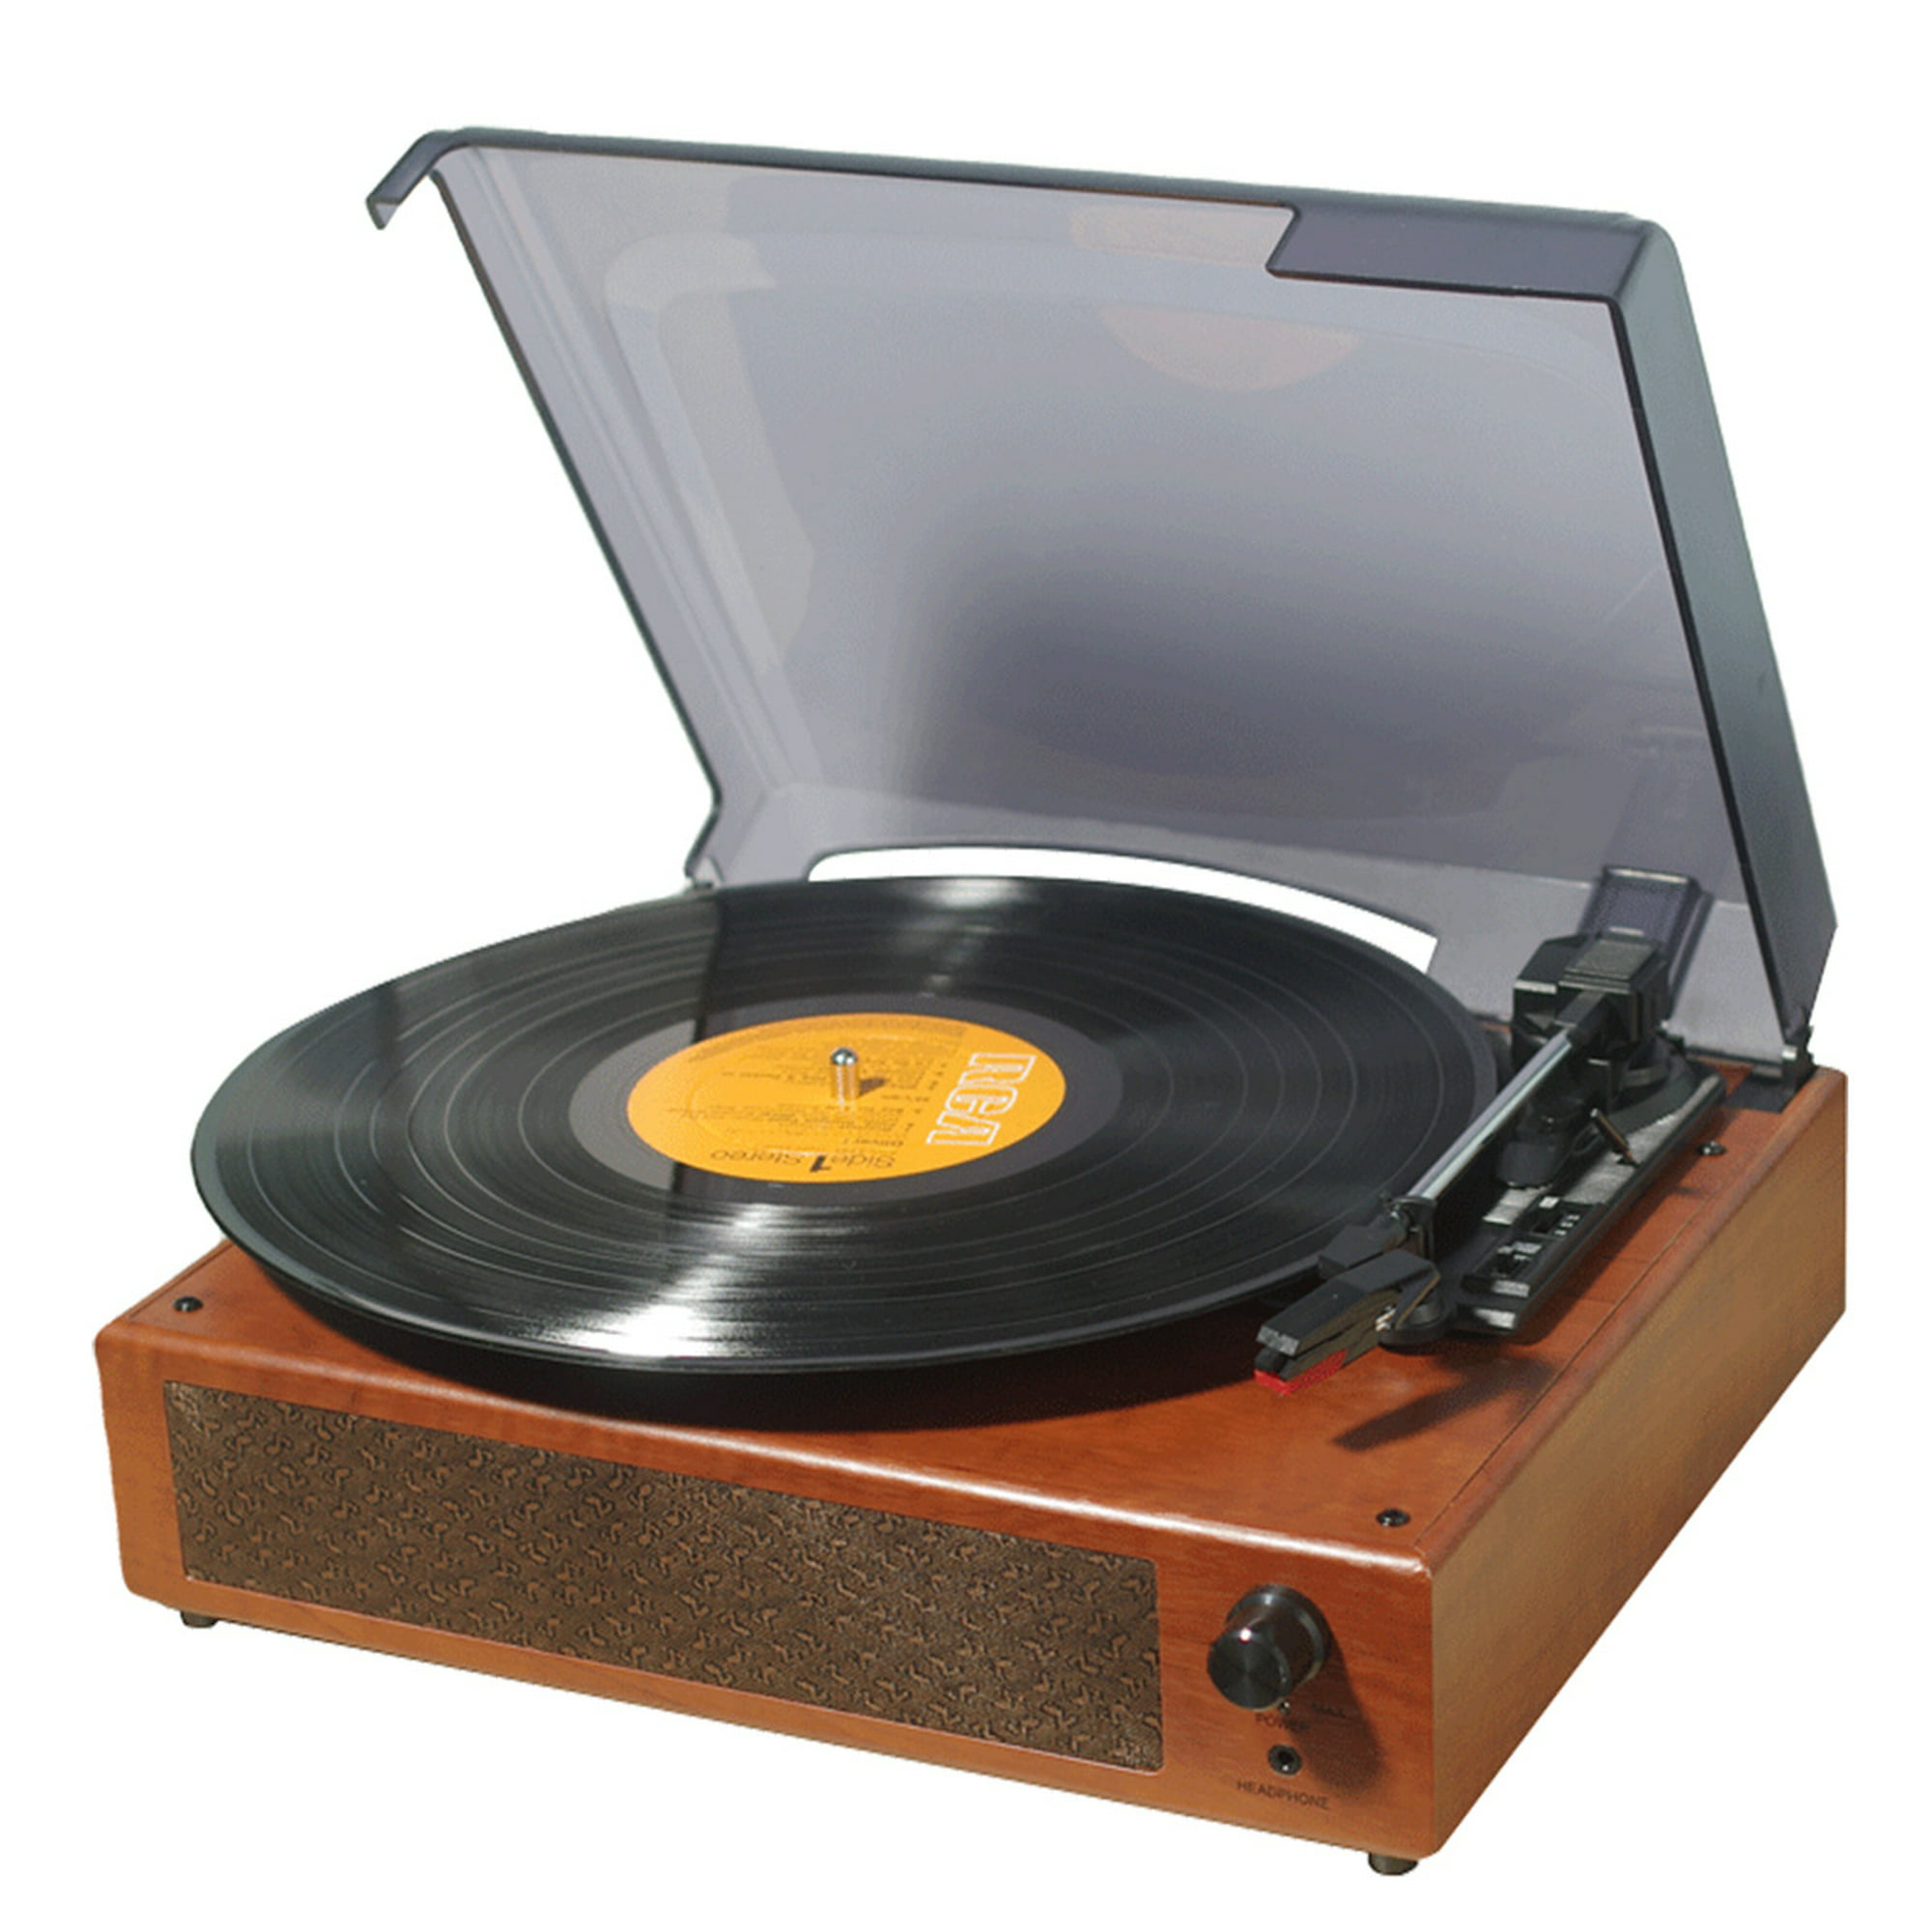 Las mejores ofertas en Discos de vinilo LP doble Oasis características de  180-220 gramos